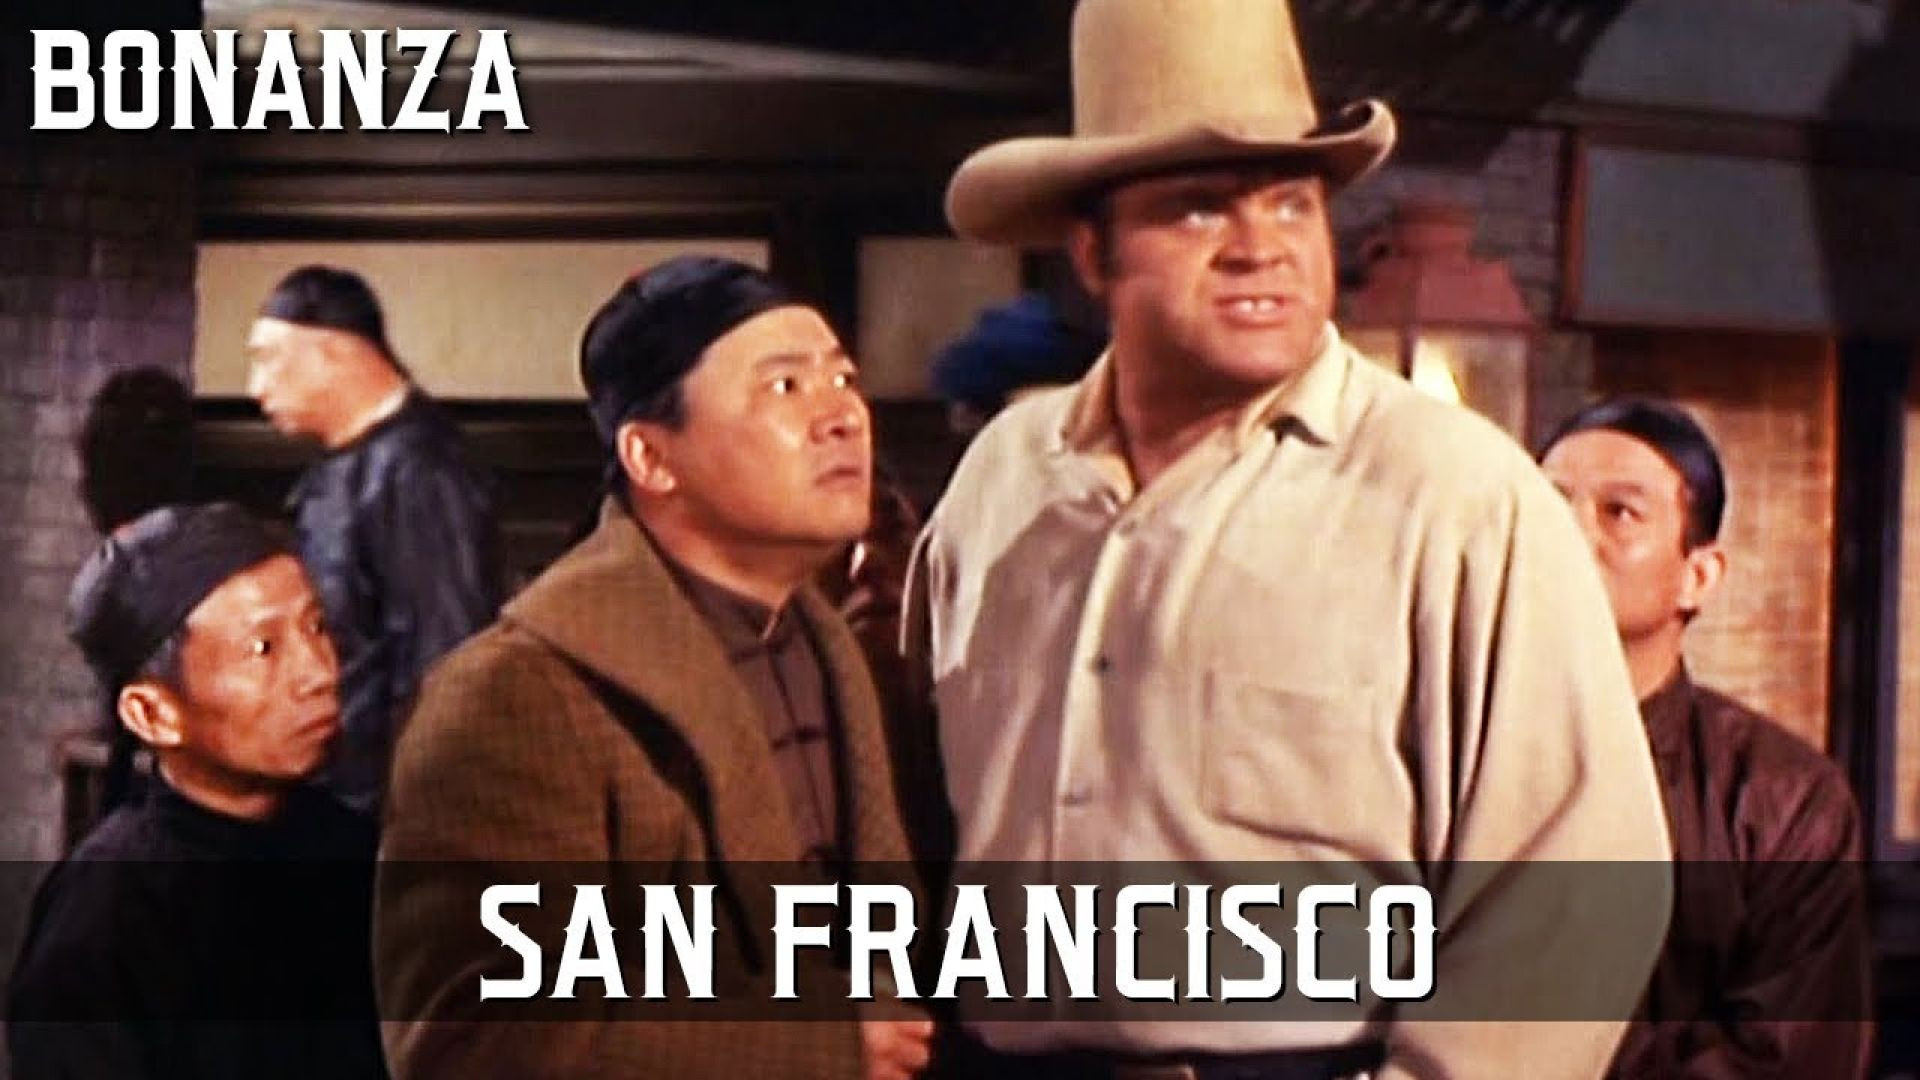 Bonanza - San Francisco ( April 2, 1960)